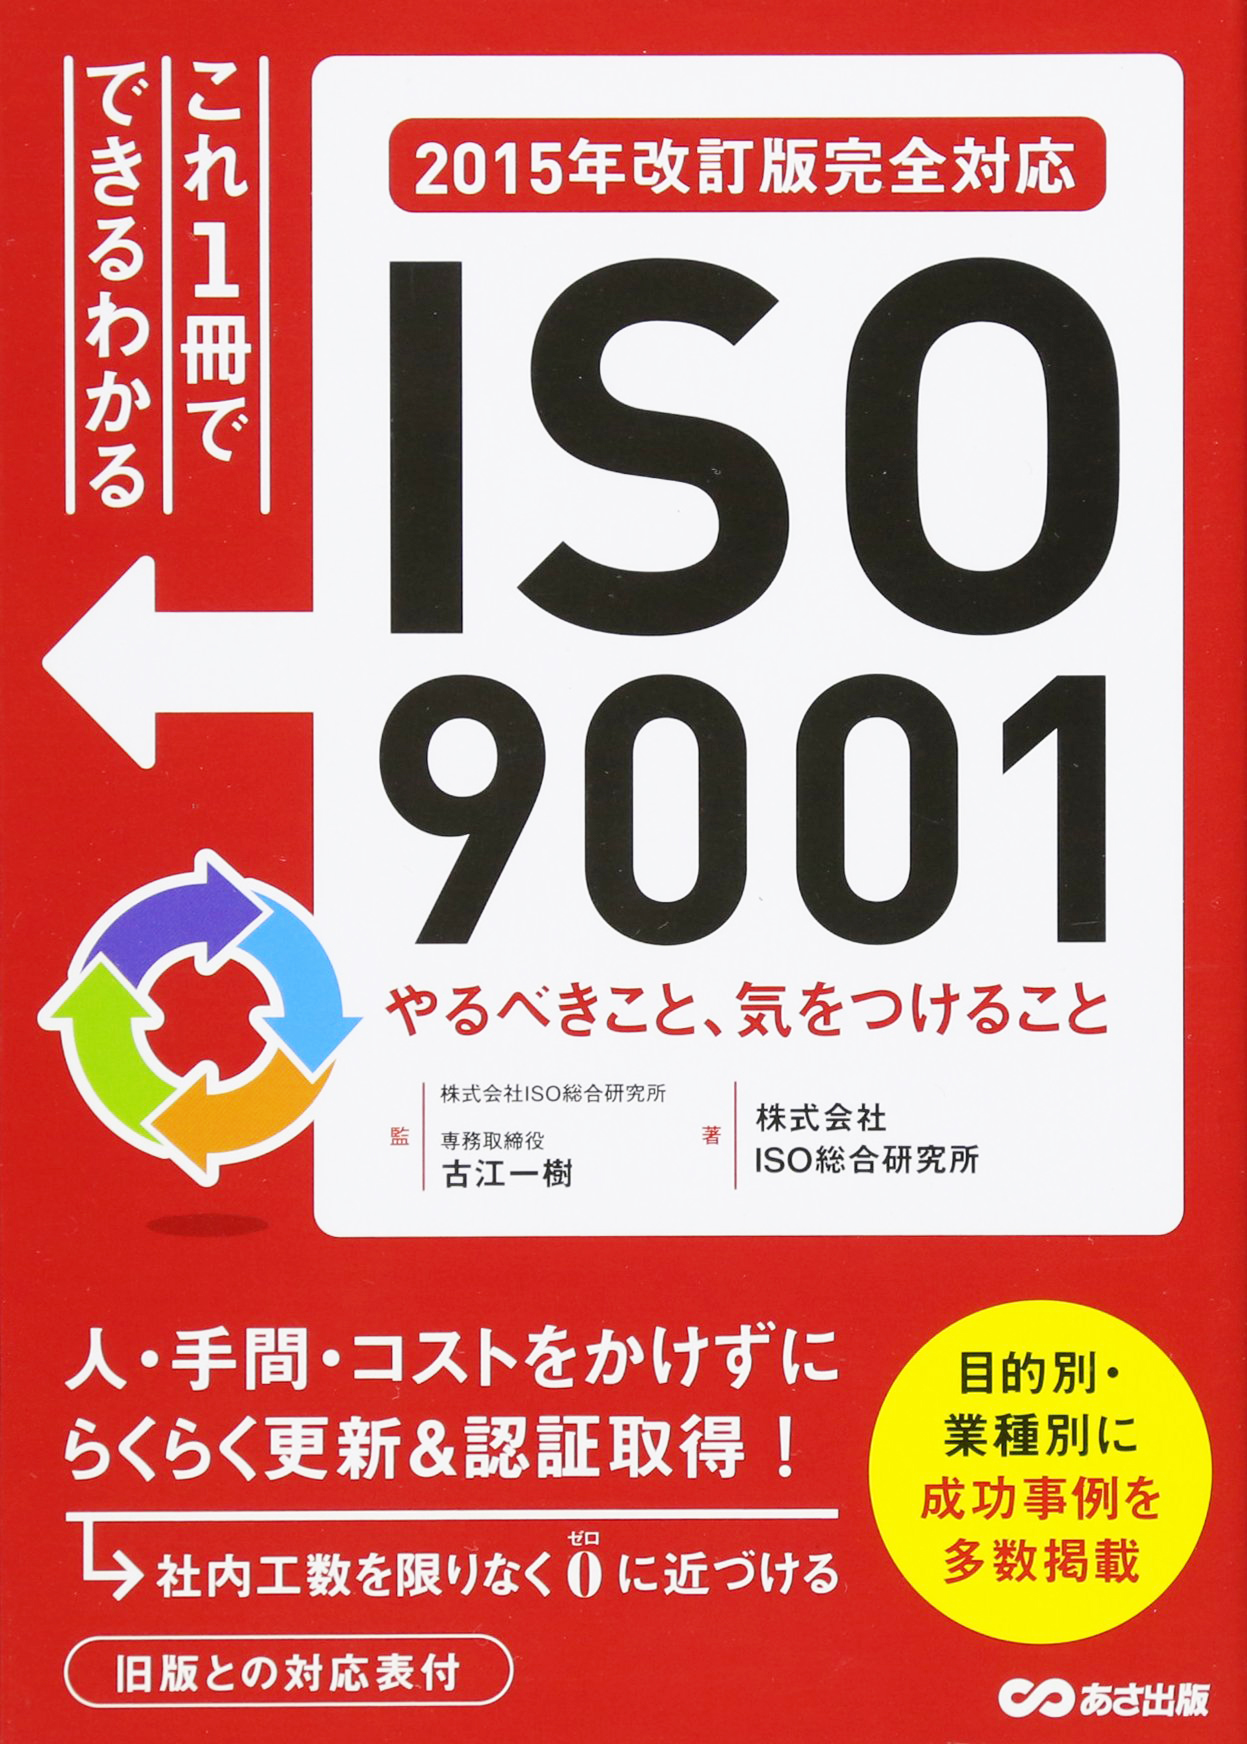 ISO9001 やるべきこと、気をつけること